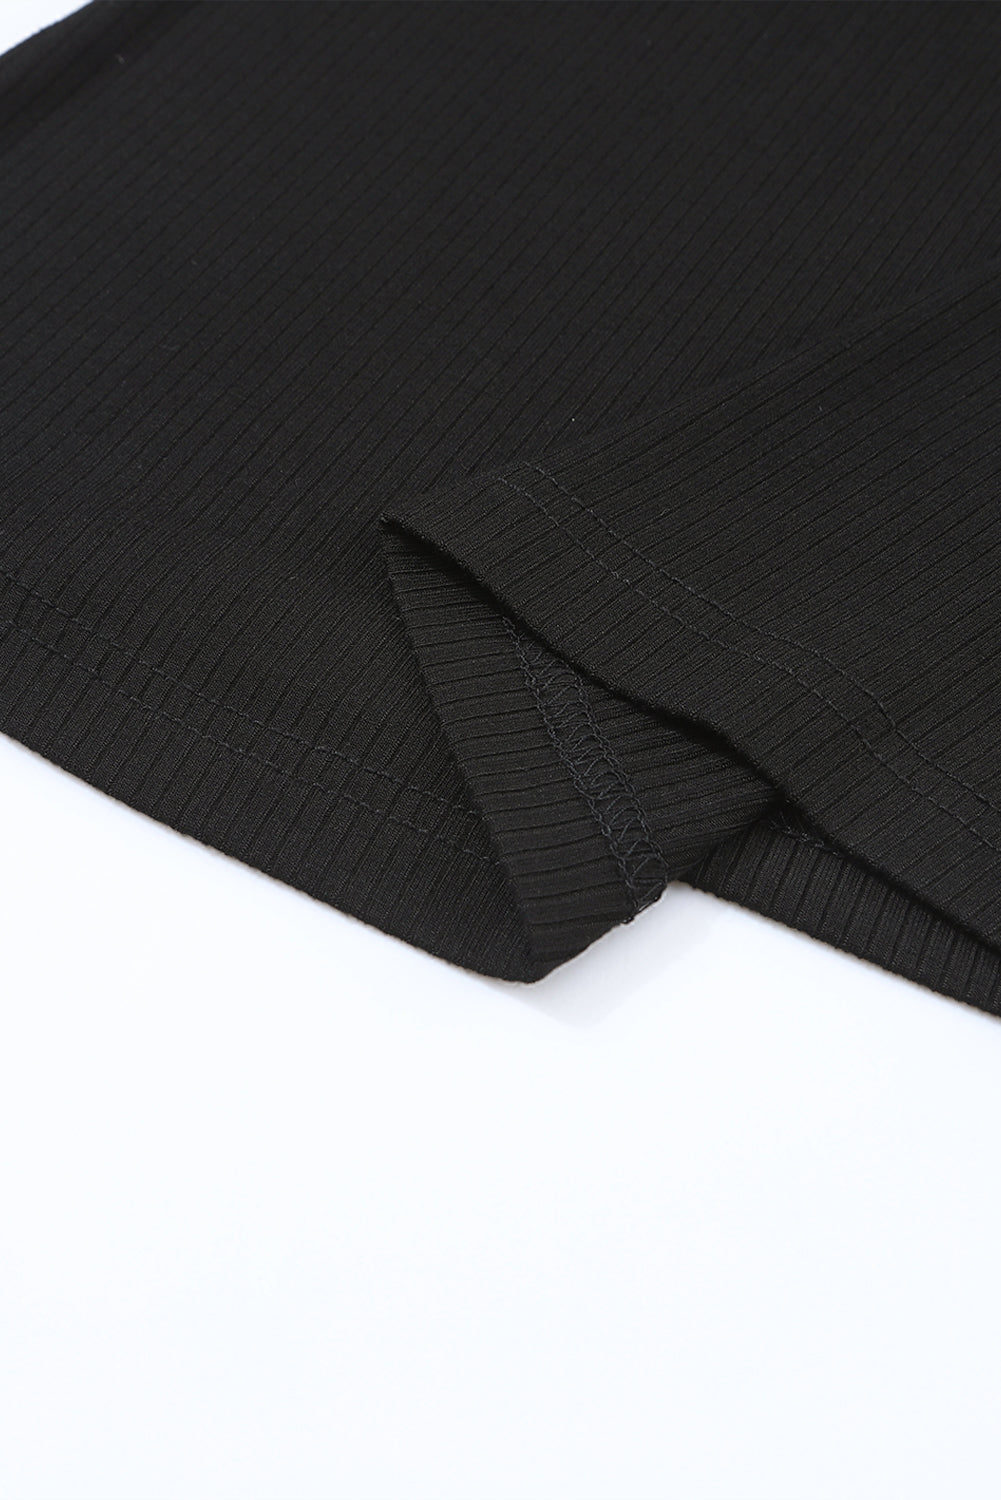 Črna pletena majica z napihnjenimi rokavi v obliki črne rože